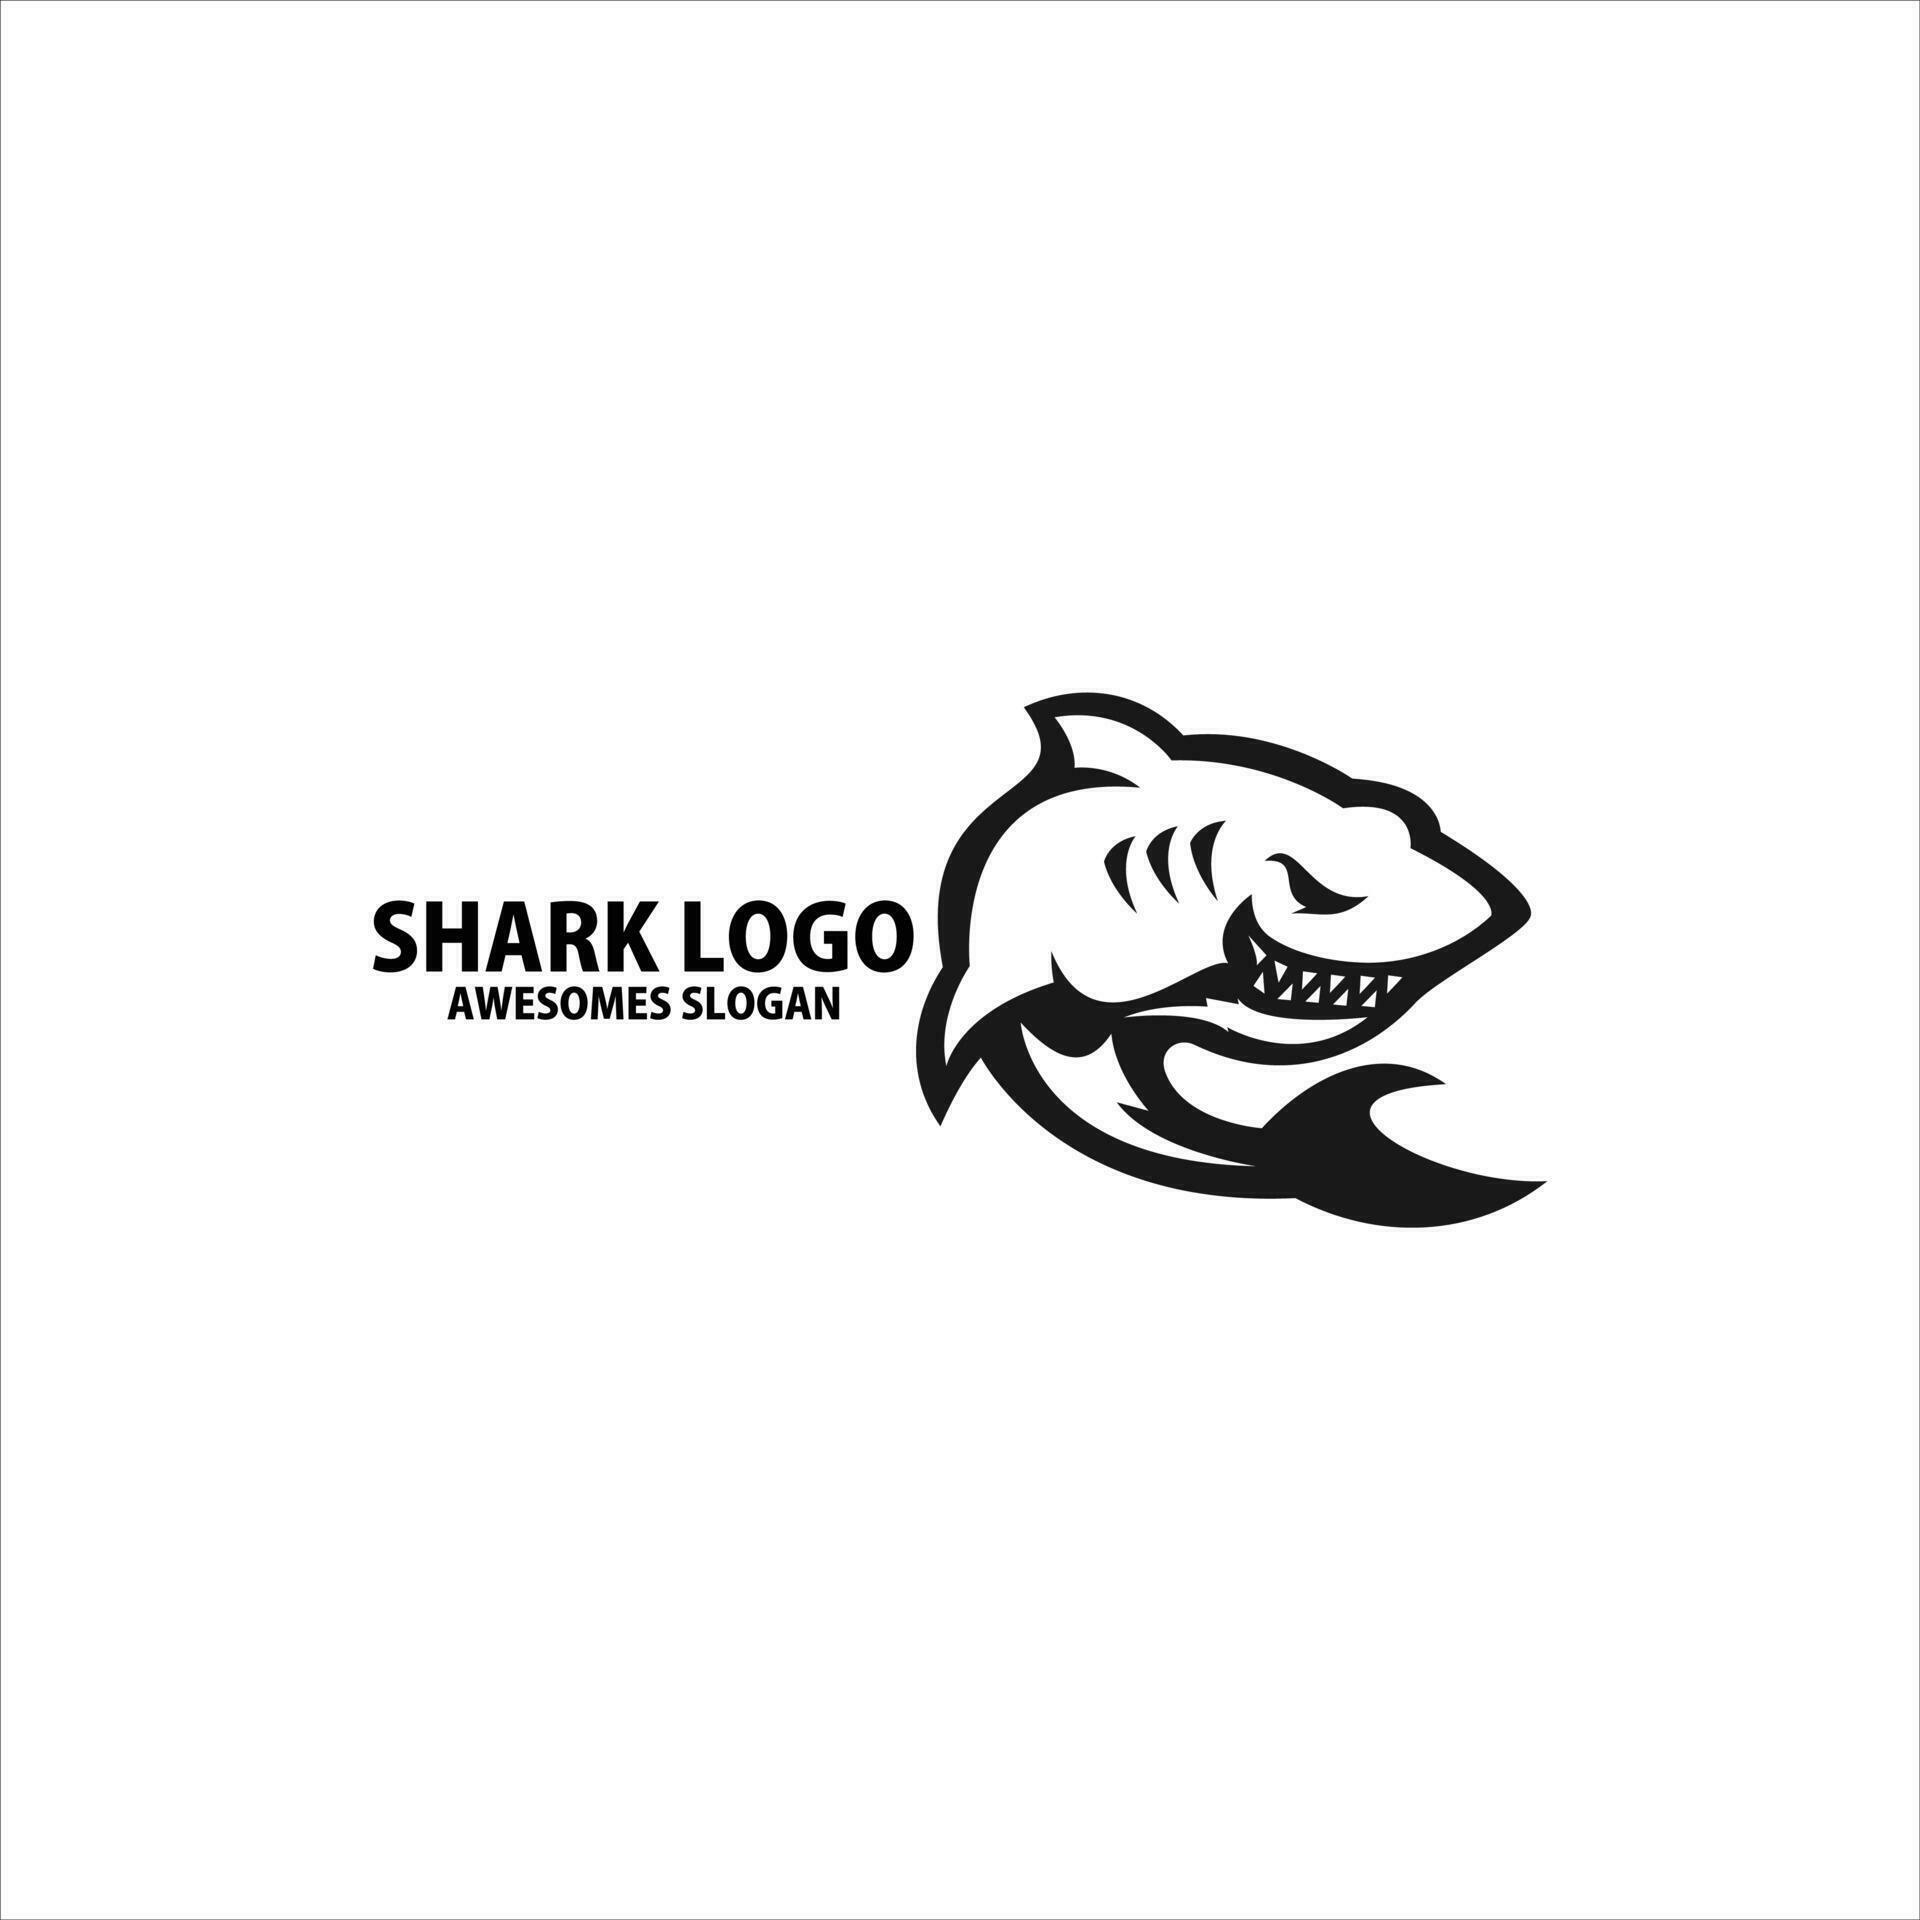 shark logo design line art 24306743 Vector Art at Vecteezy